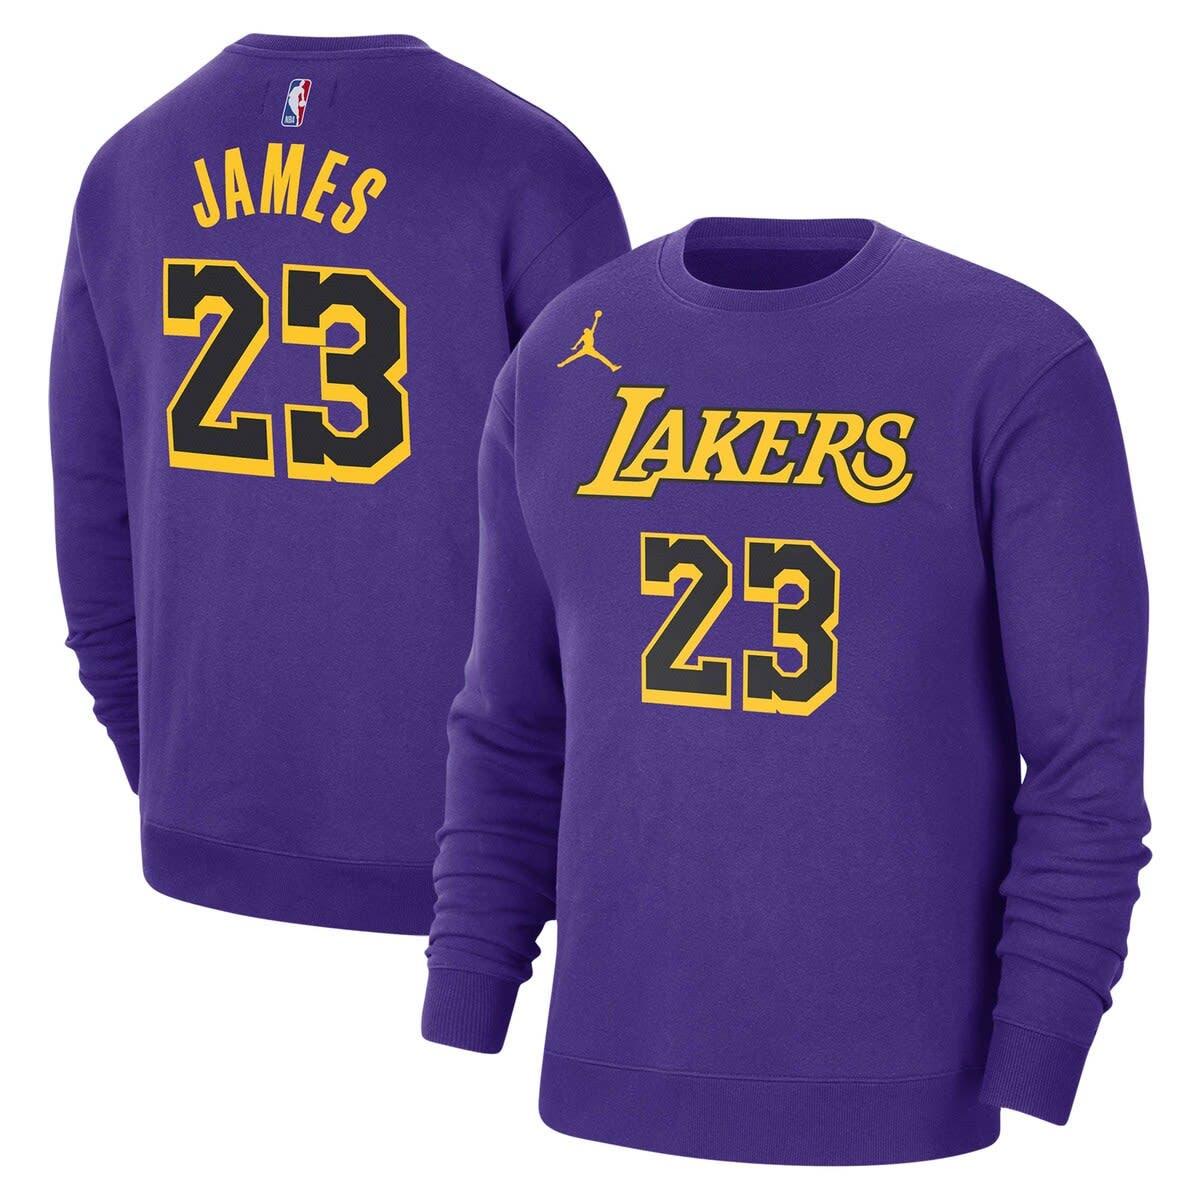 Nike Women's LeBron James Los Angeles Lakers Swingman Jersey - Macy's